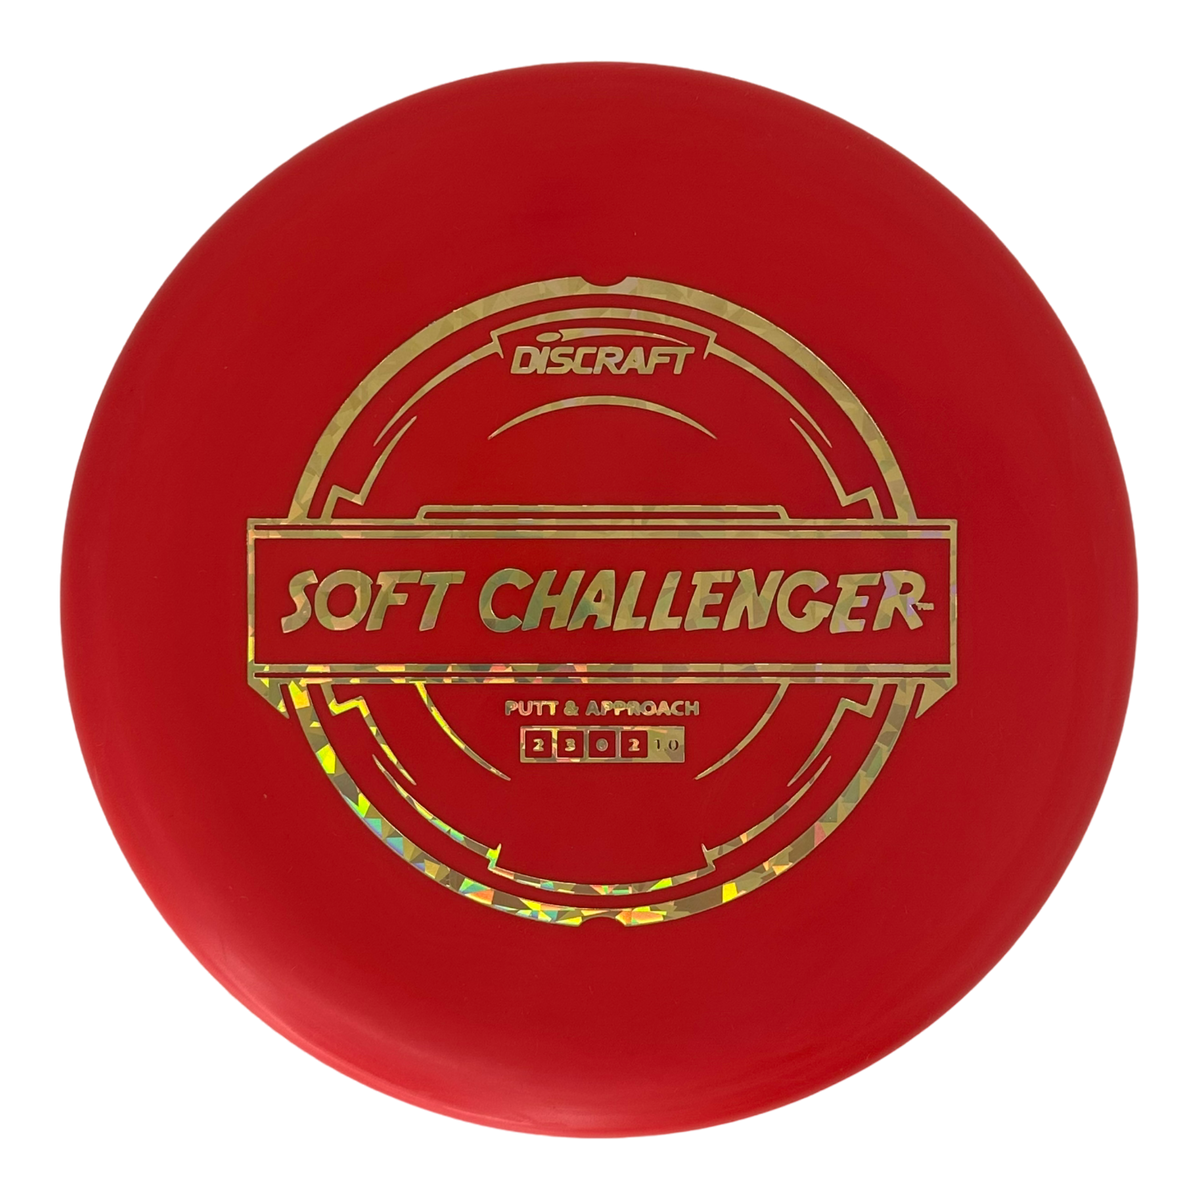 Discraft Putter Line Soft Challenger